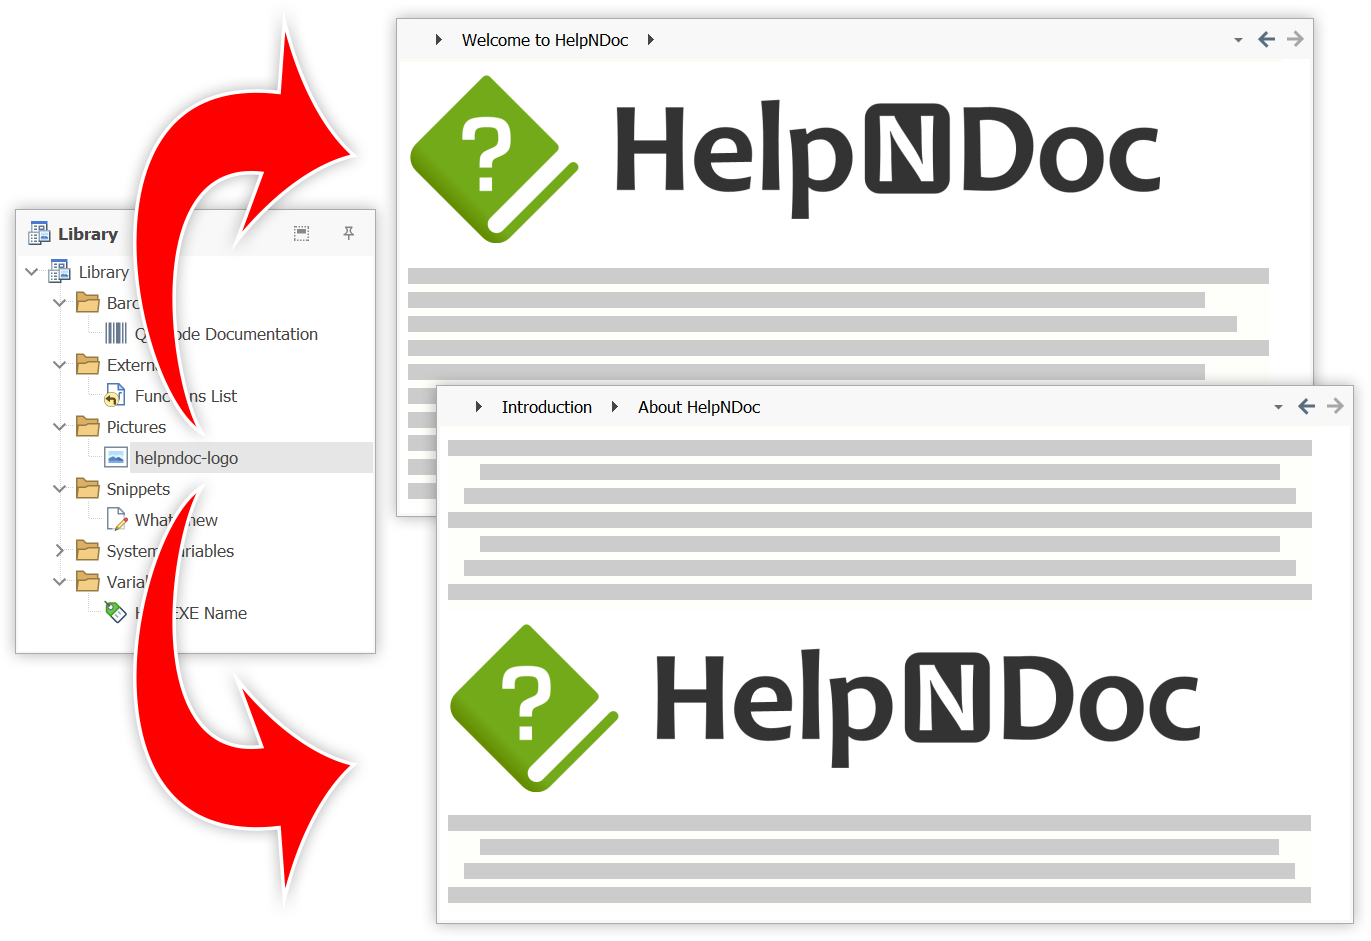 Descubre las funciones de HelpNDoc: Crear eBooks para